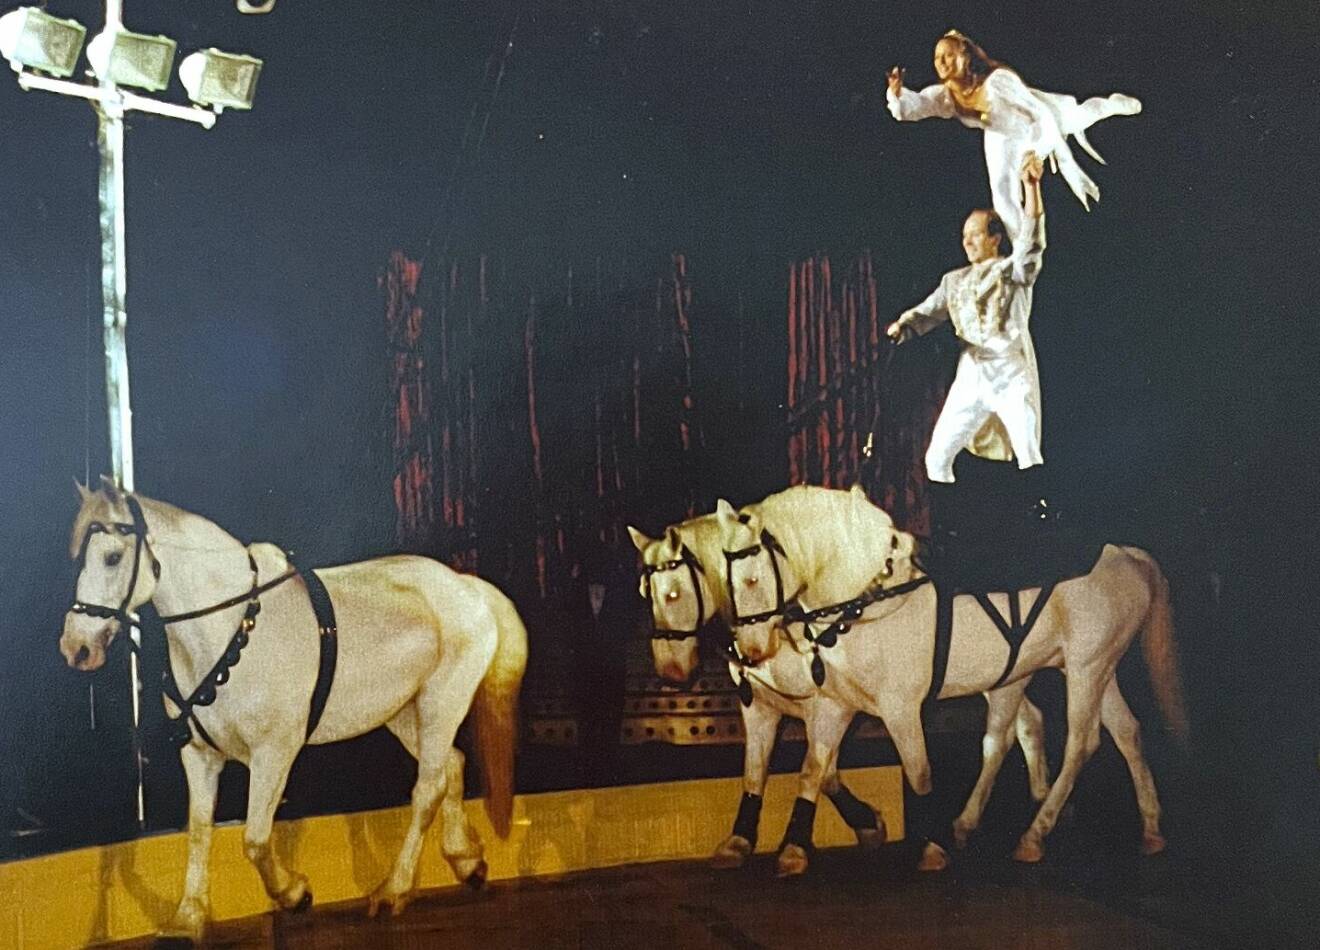 Carlos och Susanne gör ett nummer i cirkusmanegen där han står med varsitt ben på två hästar och hon står med ena benet på hans axel, sträcker ut det andra håller Carlos i en hand.